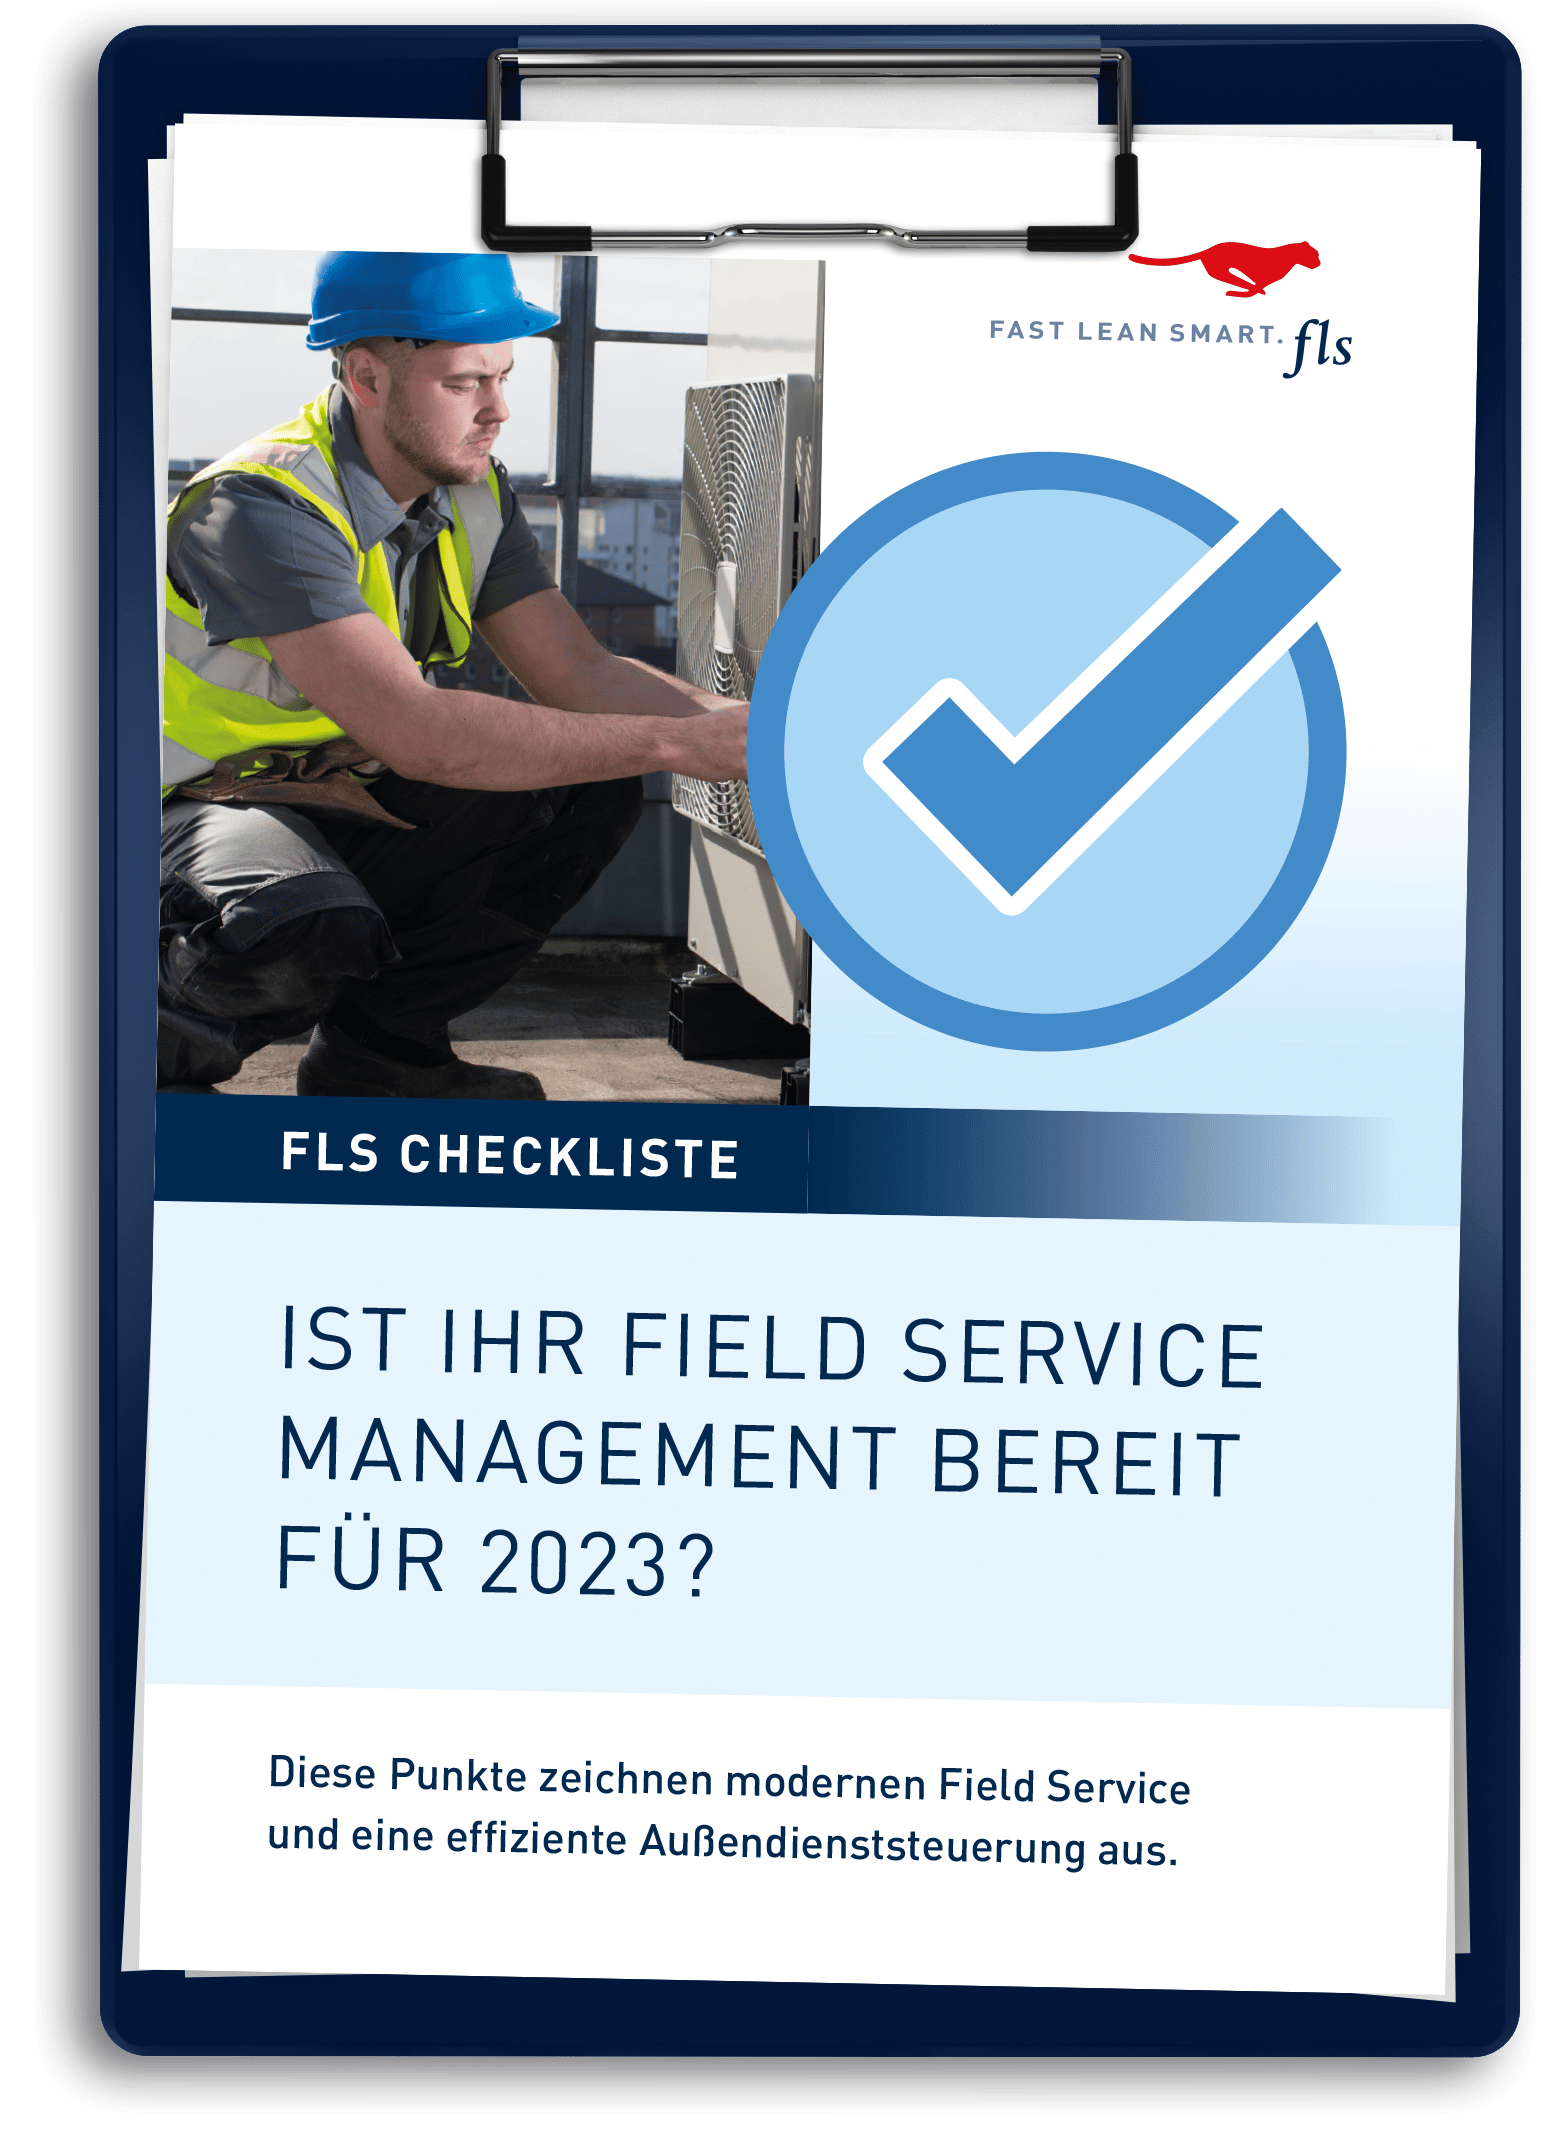 FLS-CHECKLISTE-field-service-management-2022